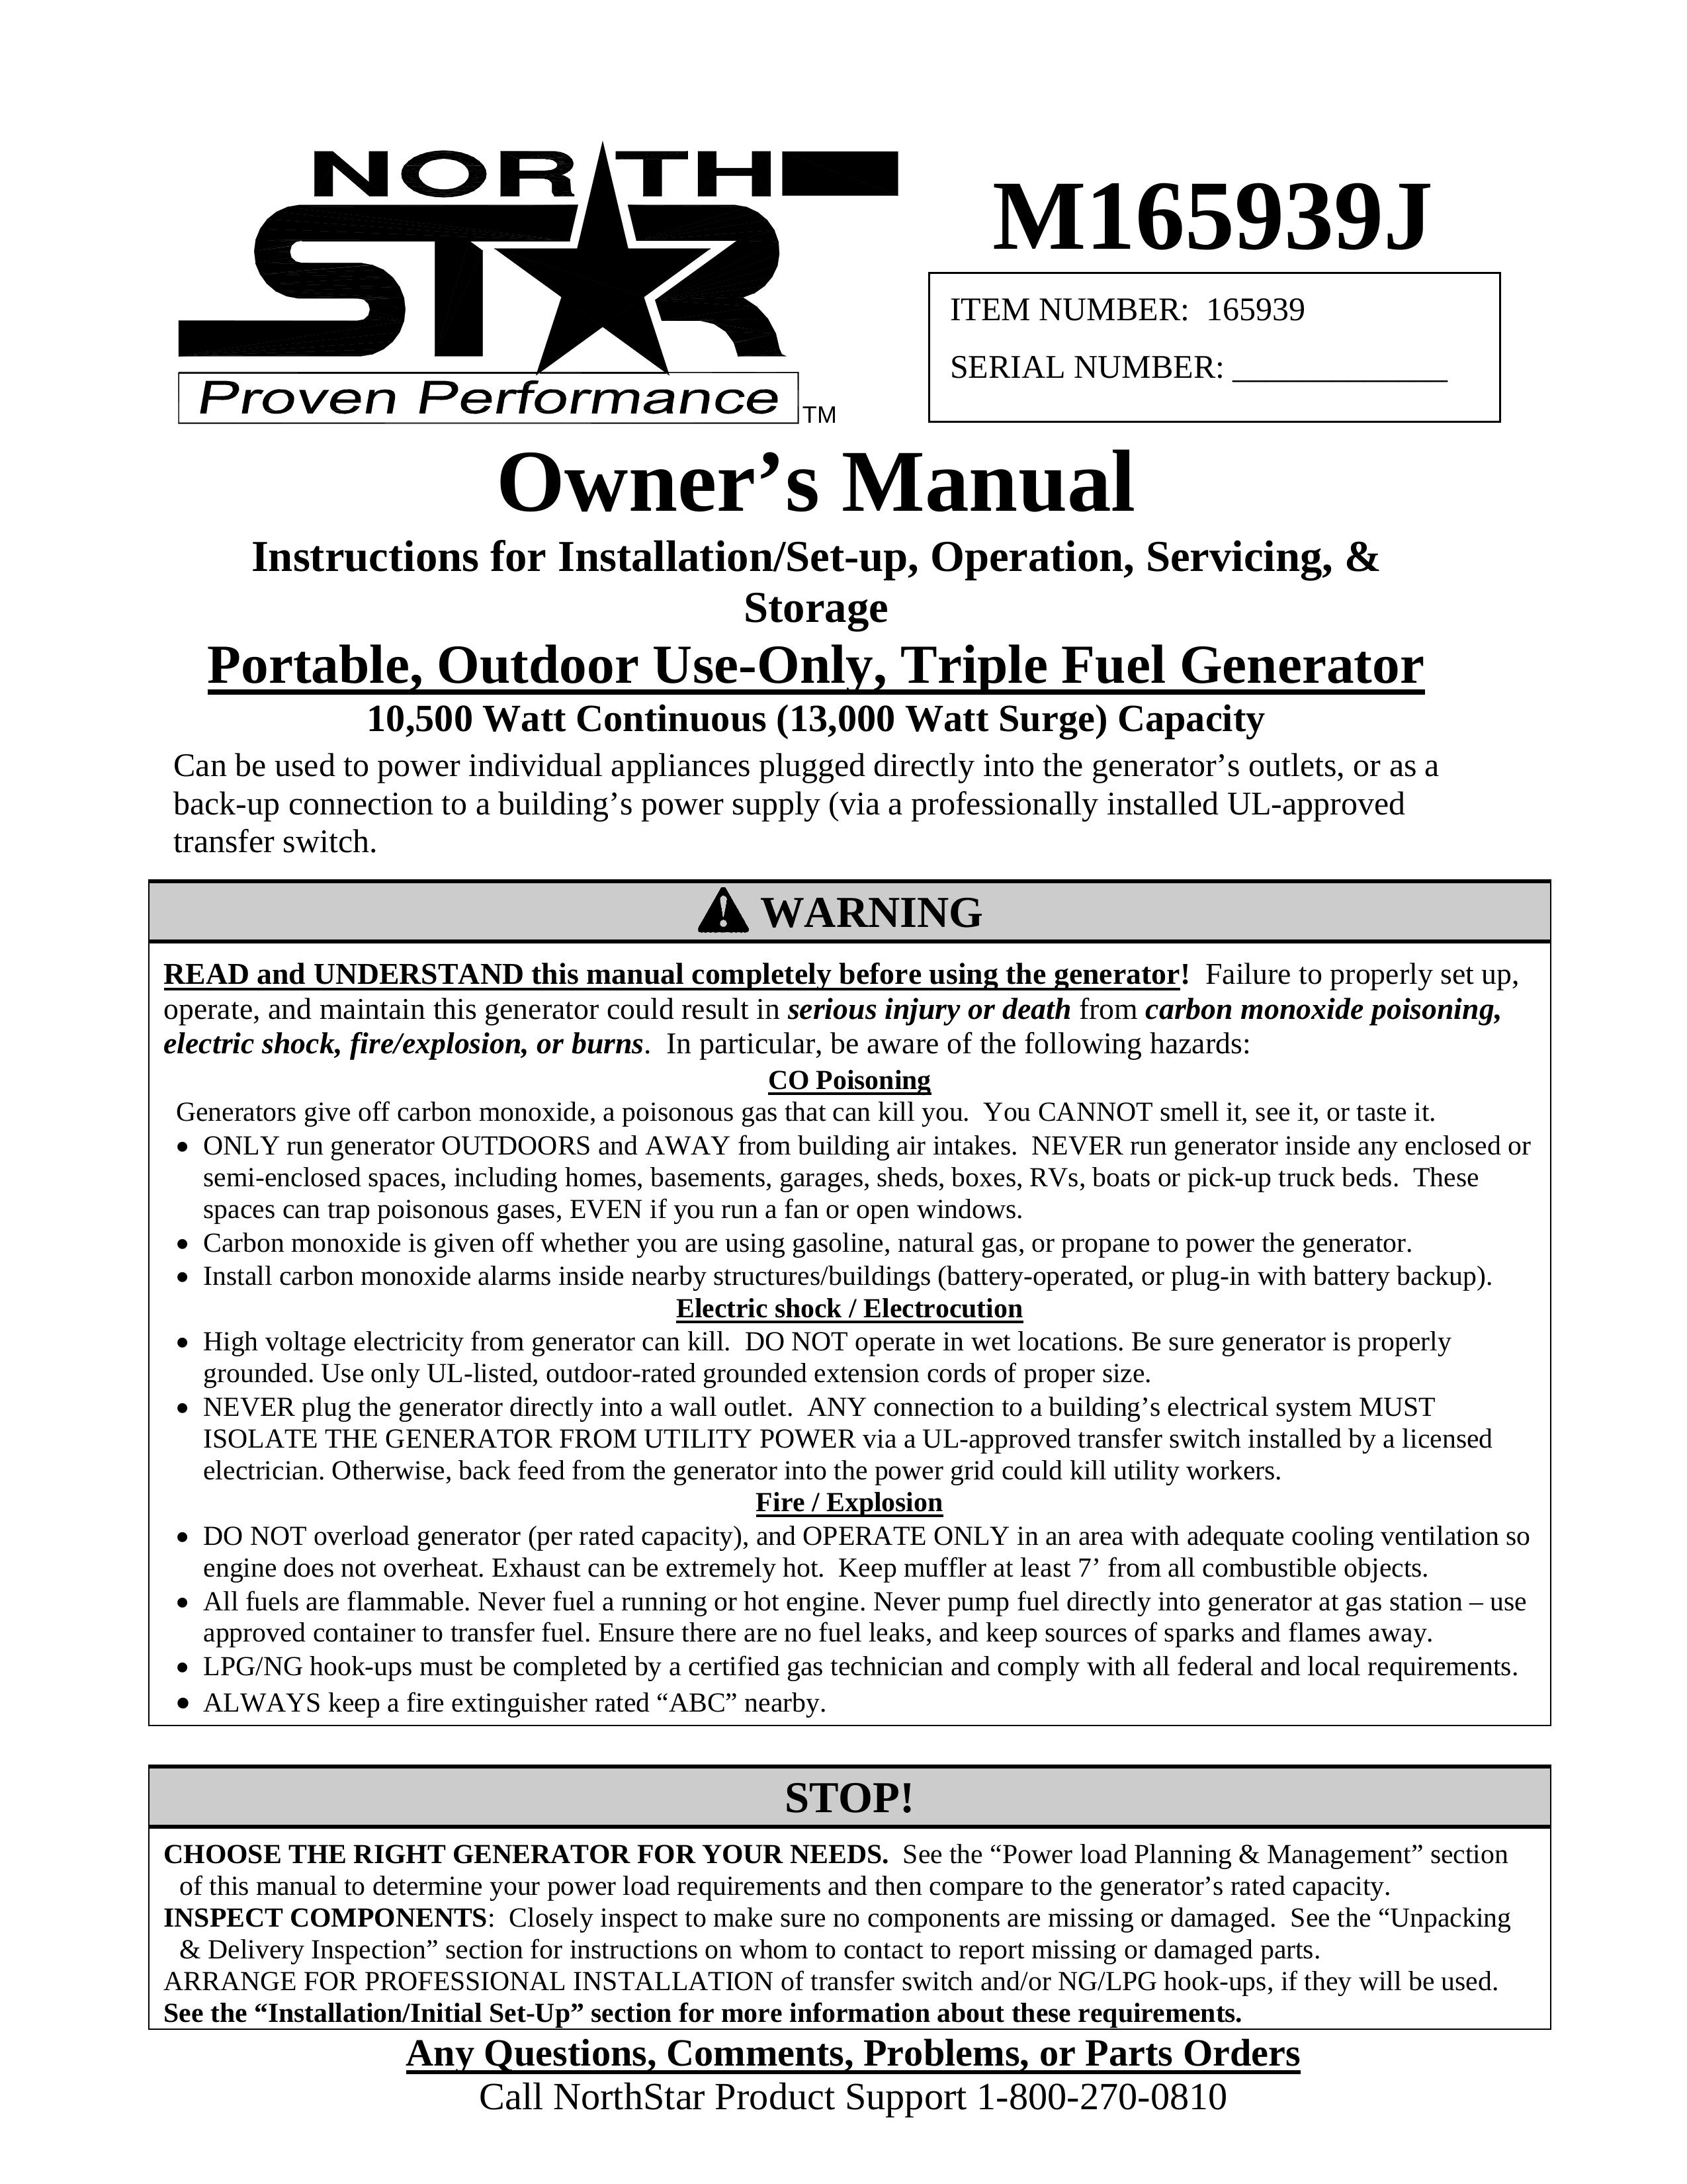 North Star M165939J Portable Generator User Manual